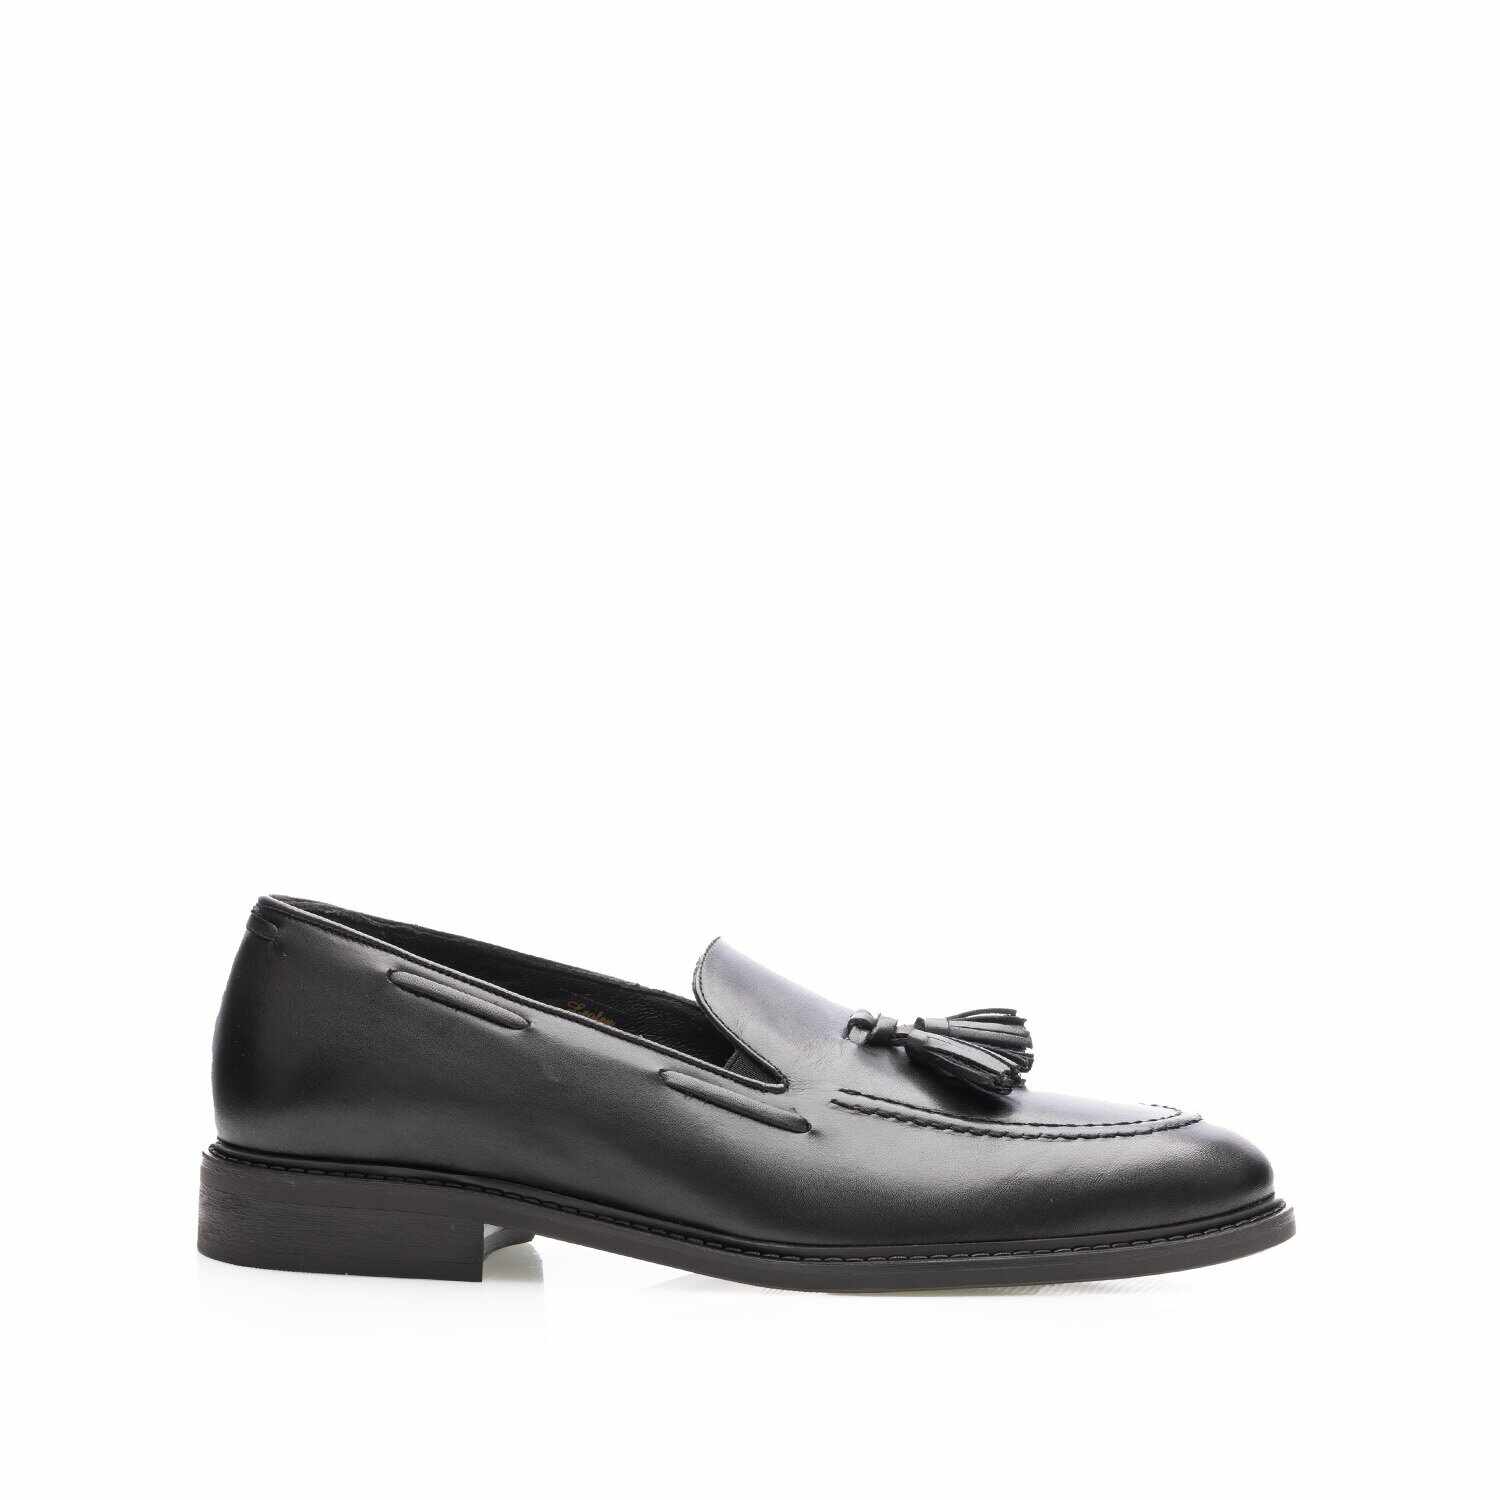 Pantofi eleganți bărbați din piele naturală, Leofex - 554 Negru Box